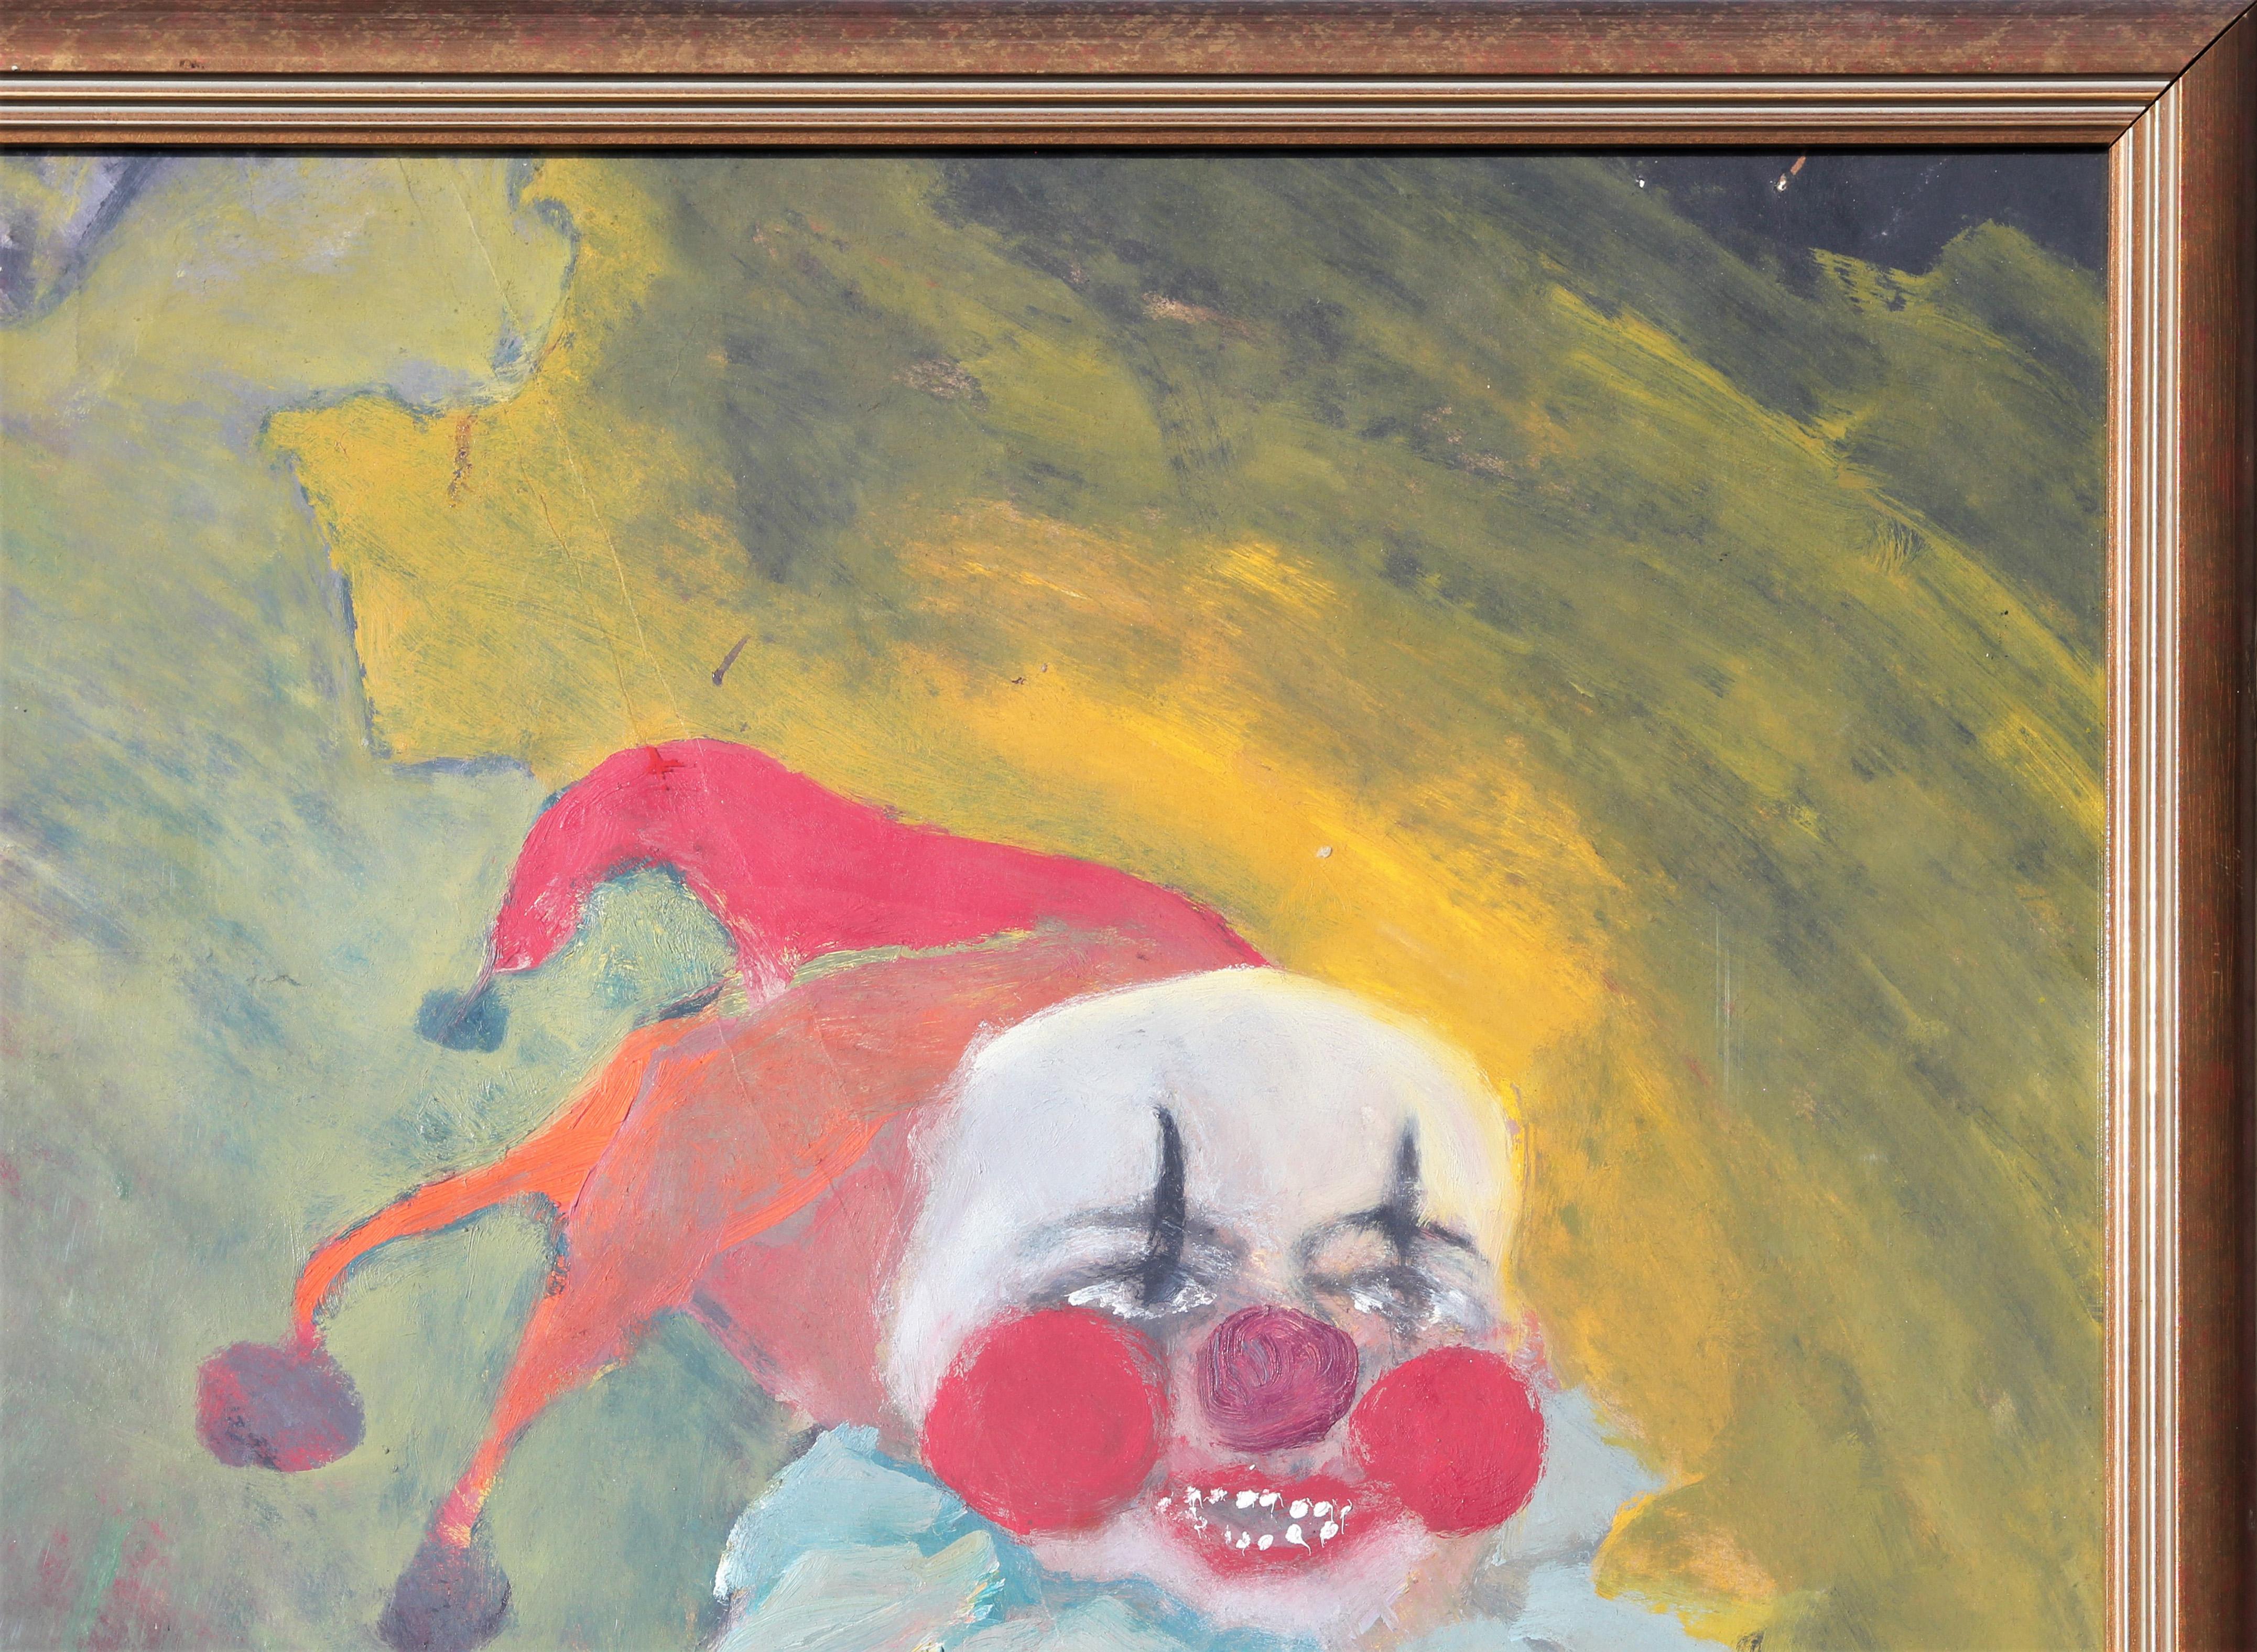 Peinture expressionniste abstraite colorée surréaliste et surréaliste d'un groupe de clowns de Macabre - Marron Figurative Painting par Unknown